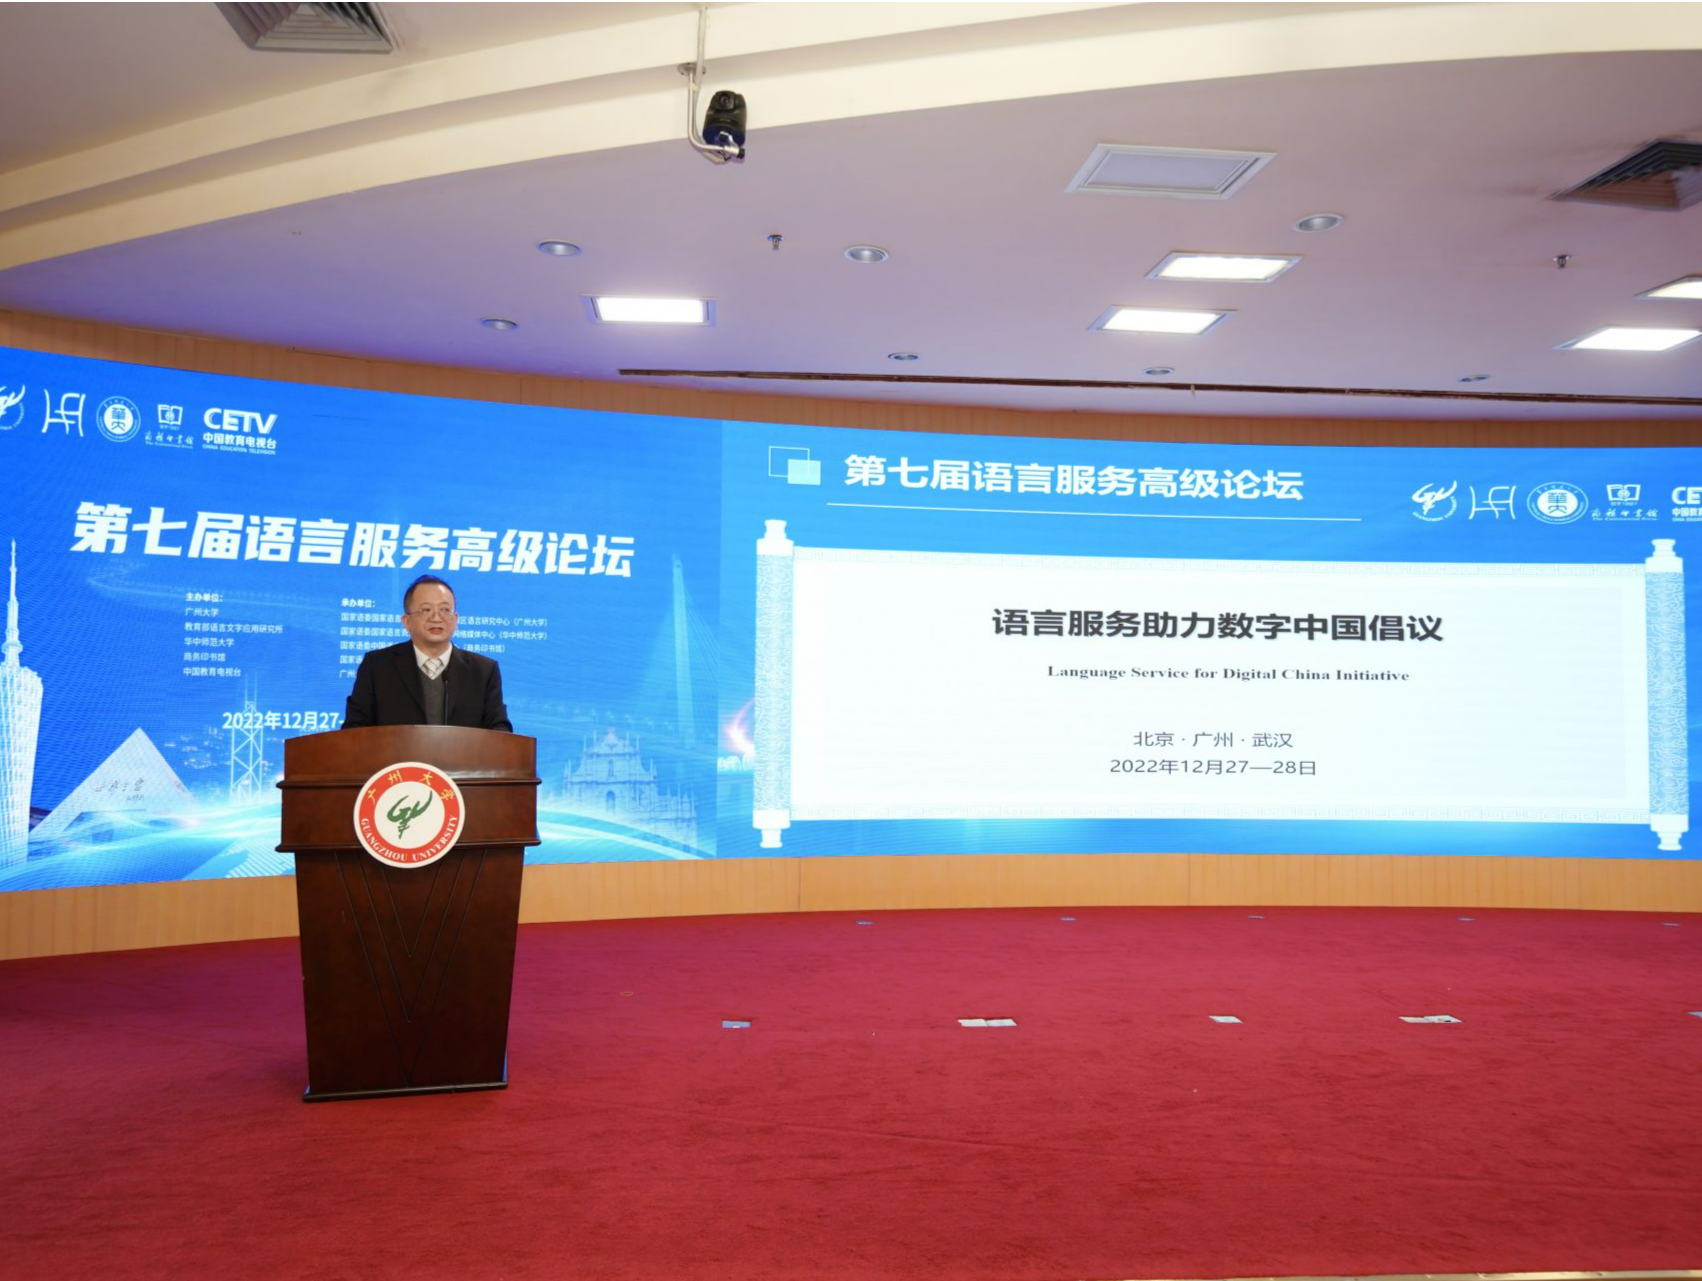 第七届语言服务高级论坛发布“语言服务助力数字中国倡议”